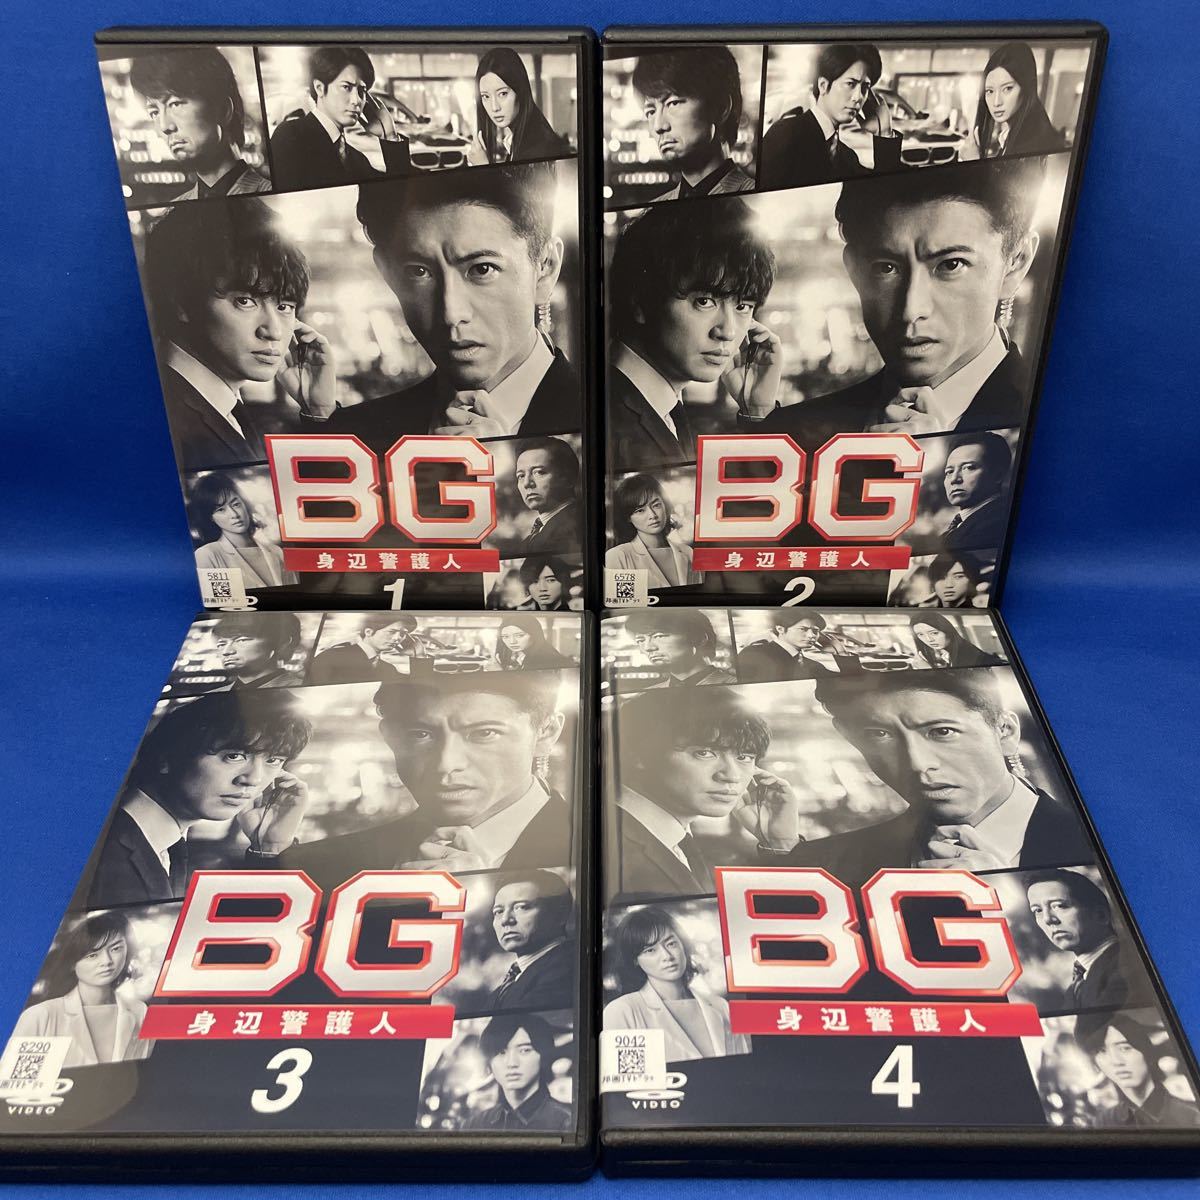 ◇新品BD☆『BG 身辺警護人2020 Blu-ray BOX』常廣丈太勝村政信仲村 